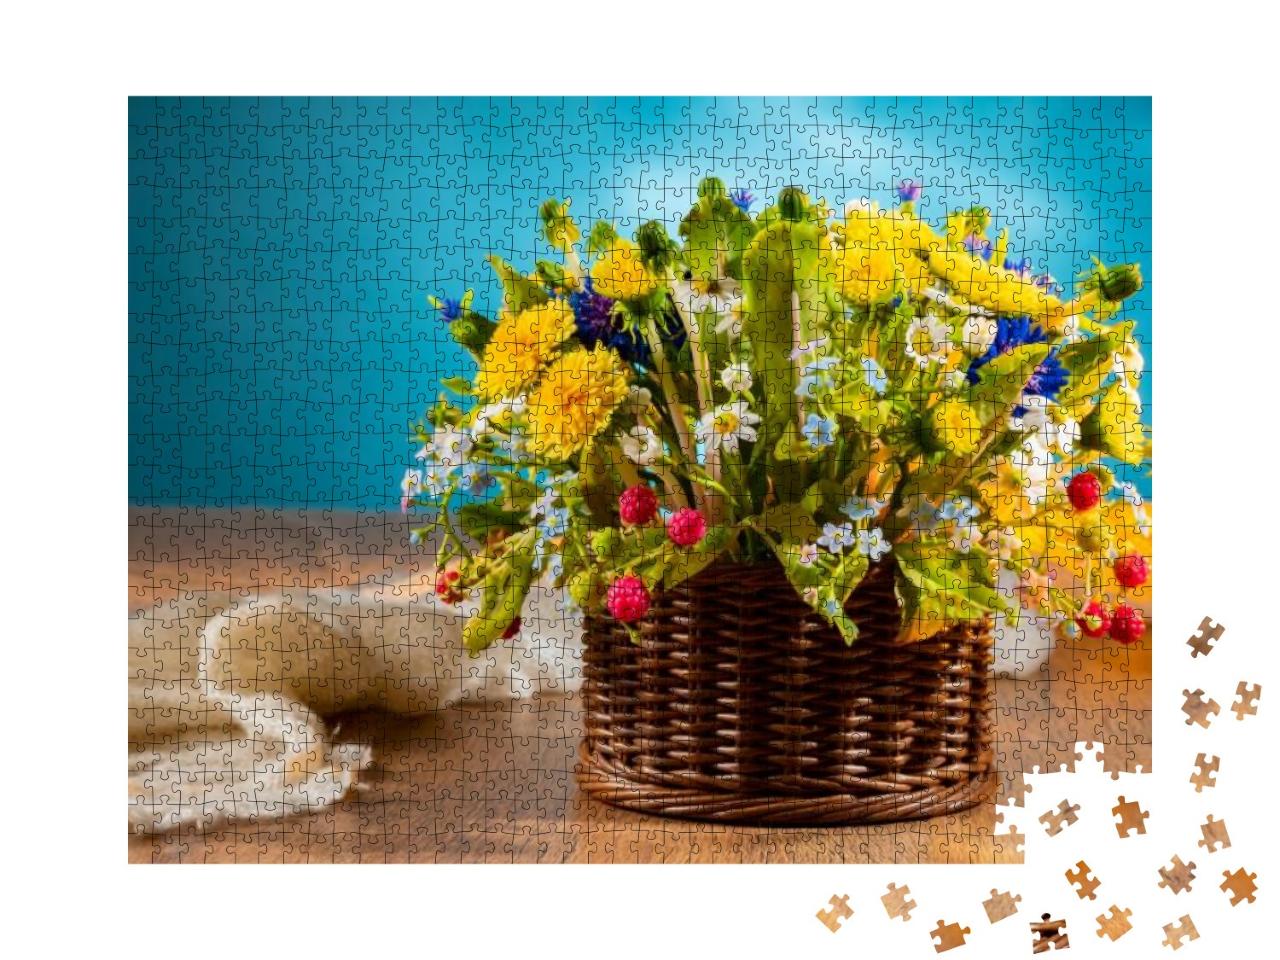 Puzzle 1000 Teile „Korb mit Wildblumen auf blauem Hintergrund“